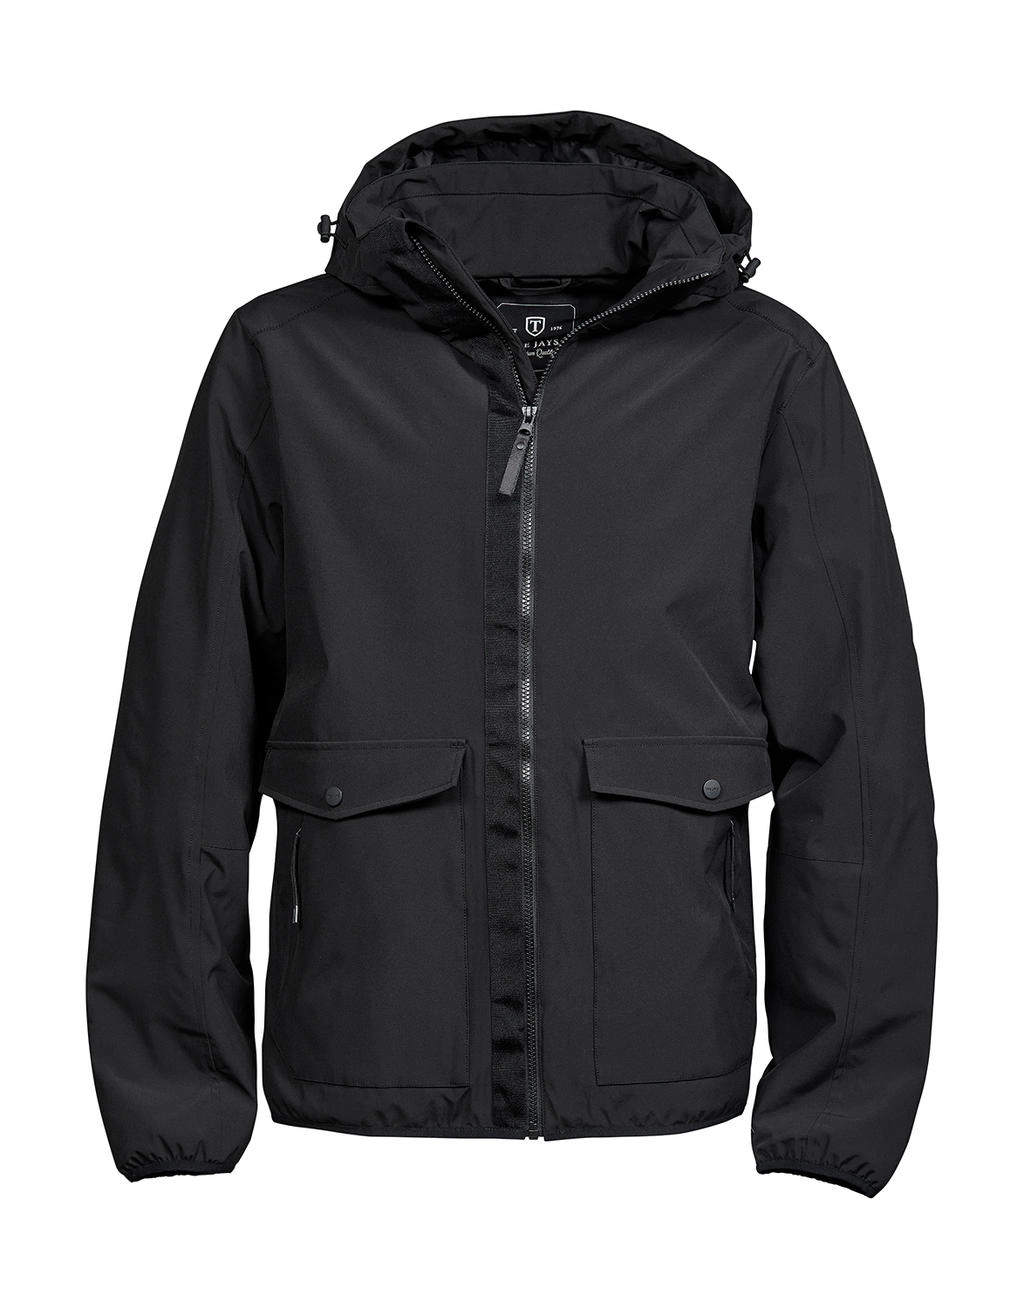 Urban Adventure Jacket zum Besticken und Bedrucken in der Farbe Black mit Ihren Logo, Schriftzug oder Motiv.